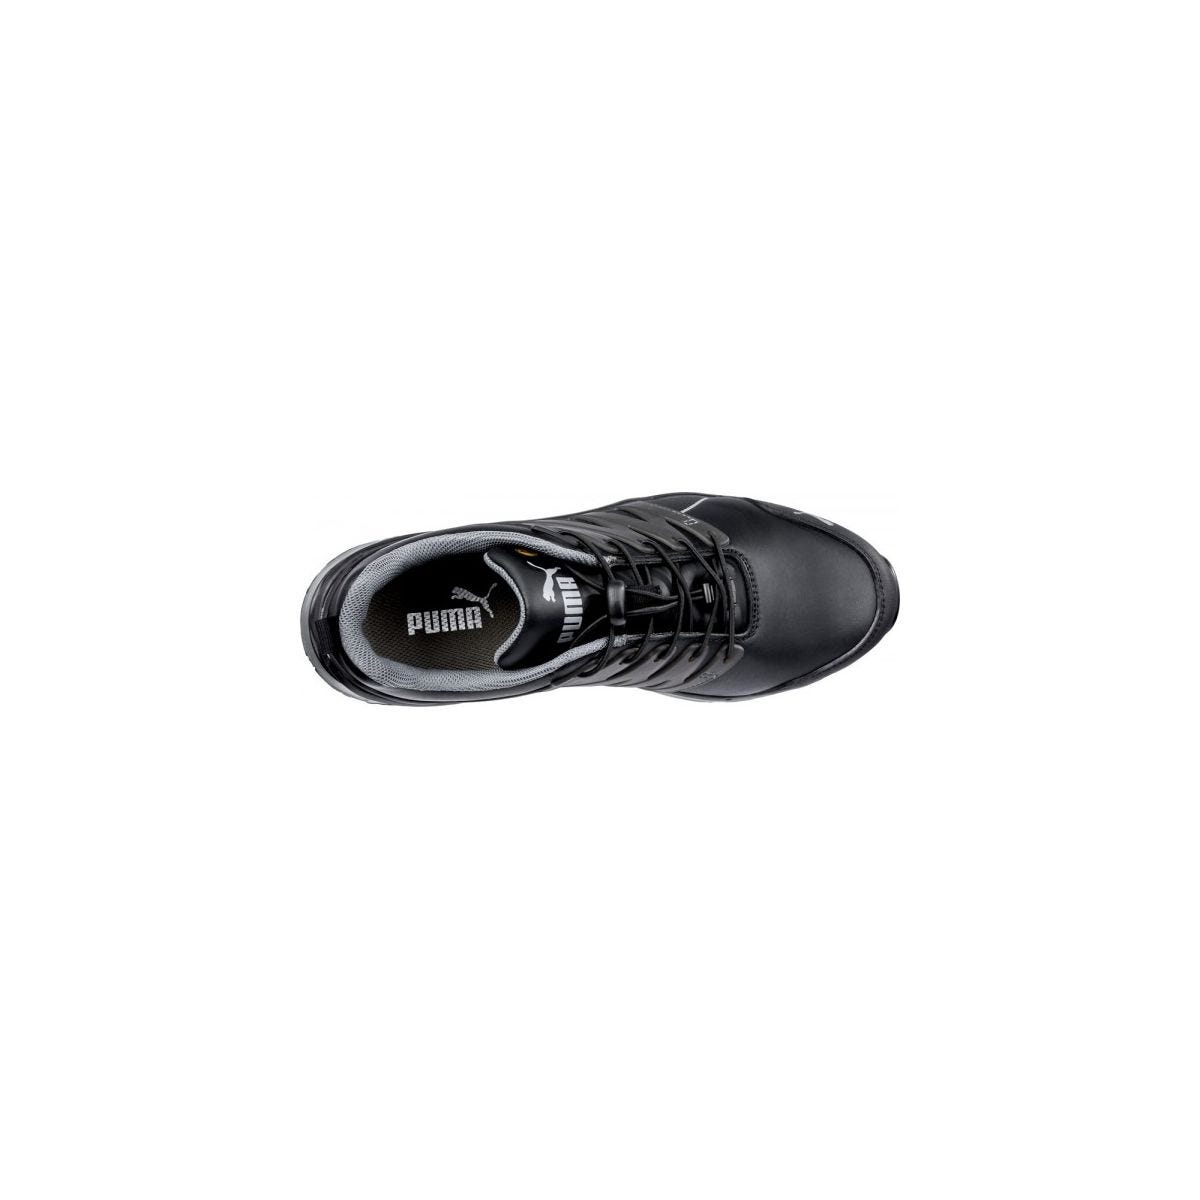 Chaussures de sécurité Velocity 2.0 Noir Low S3 - Puma - Taille 38 3